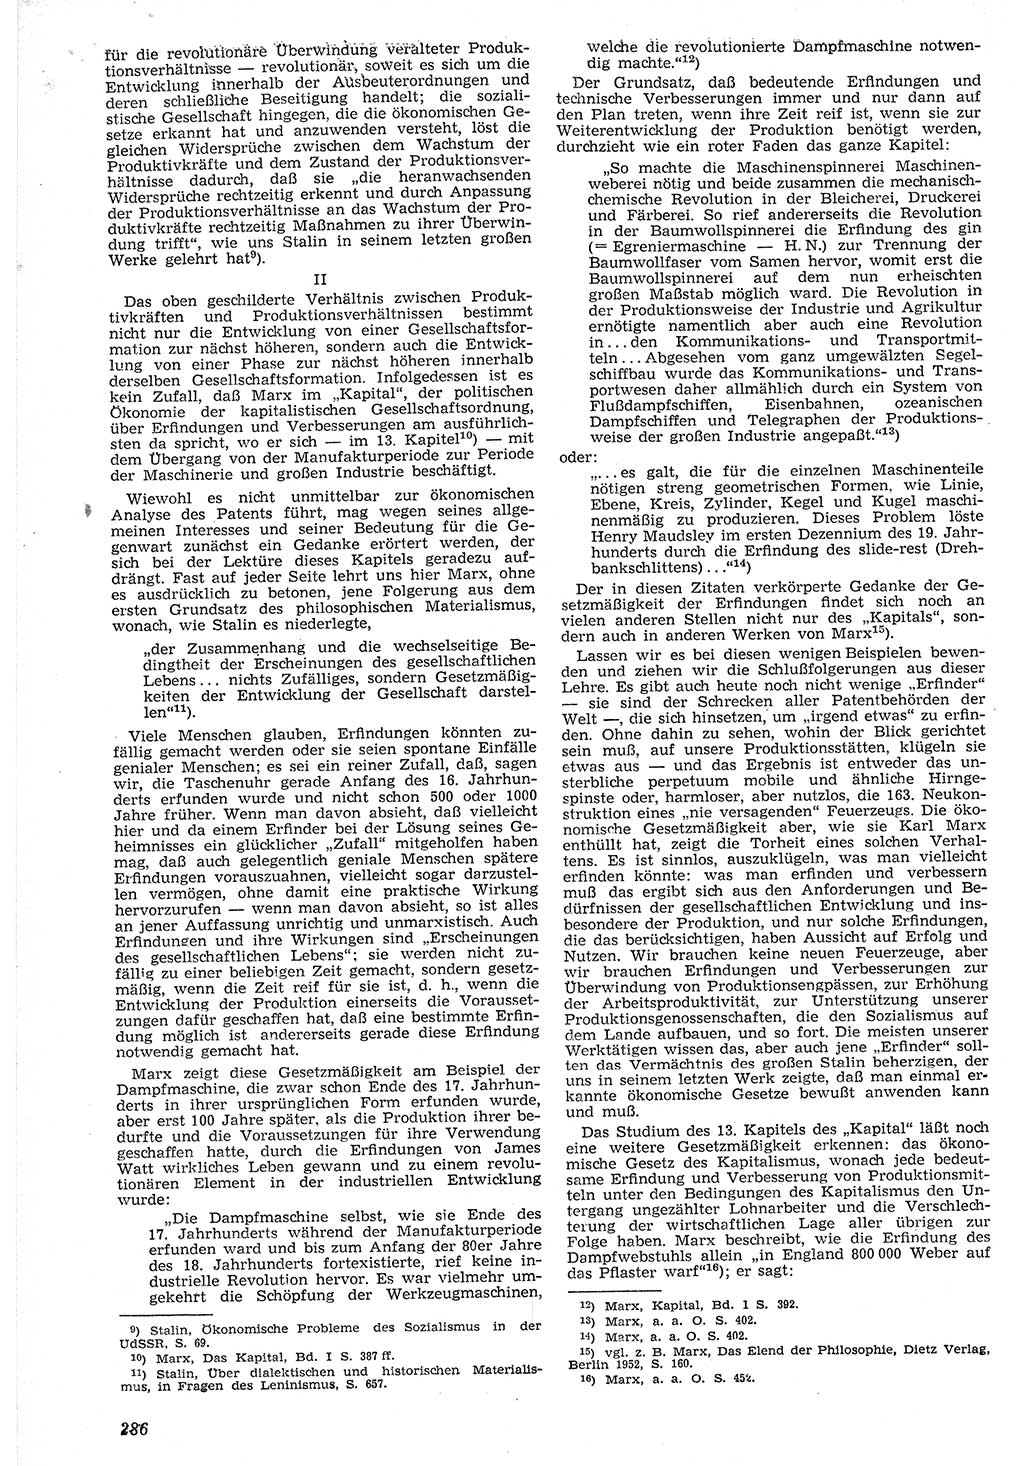 Neue Justiz (NJ), Zeitschrift für Recht und Rechtswissenschaft [Deutsche Demokratische Republik (DDR)], 7. Jahrgang 1953, Seite 286 (NJ DDR 1953, S. 286)